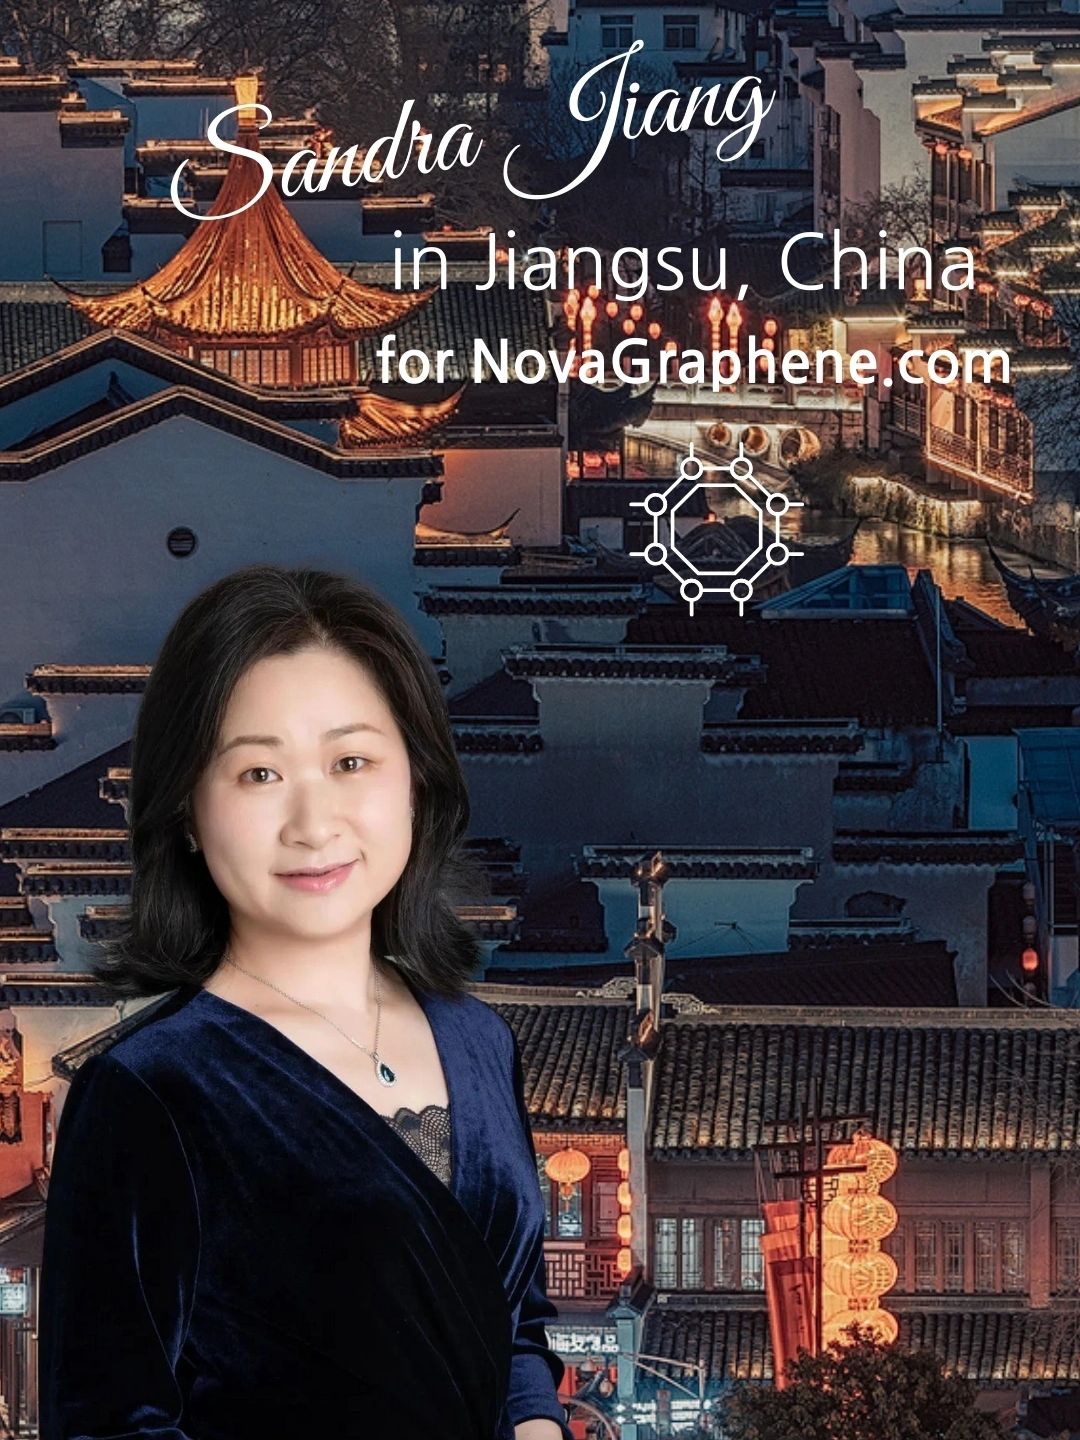 2022年1月中旬，Nova Graphene访问了江苏省南京市